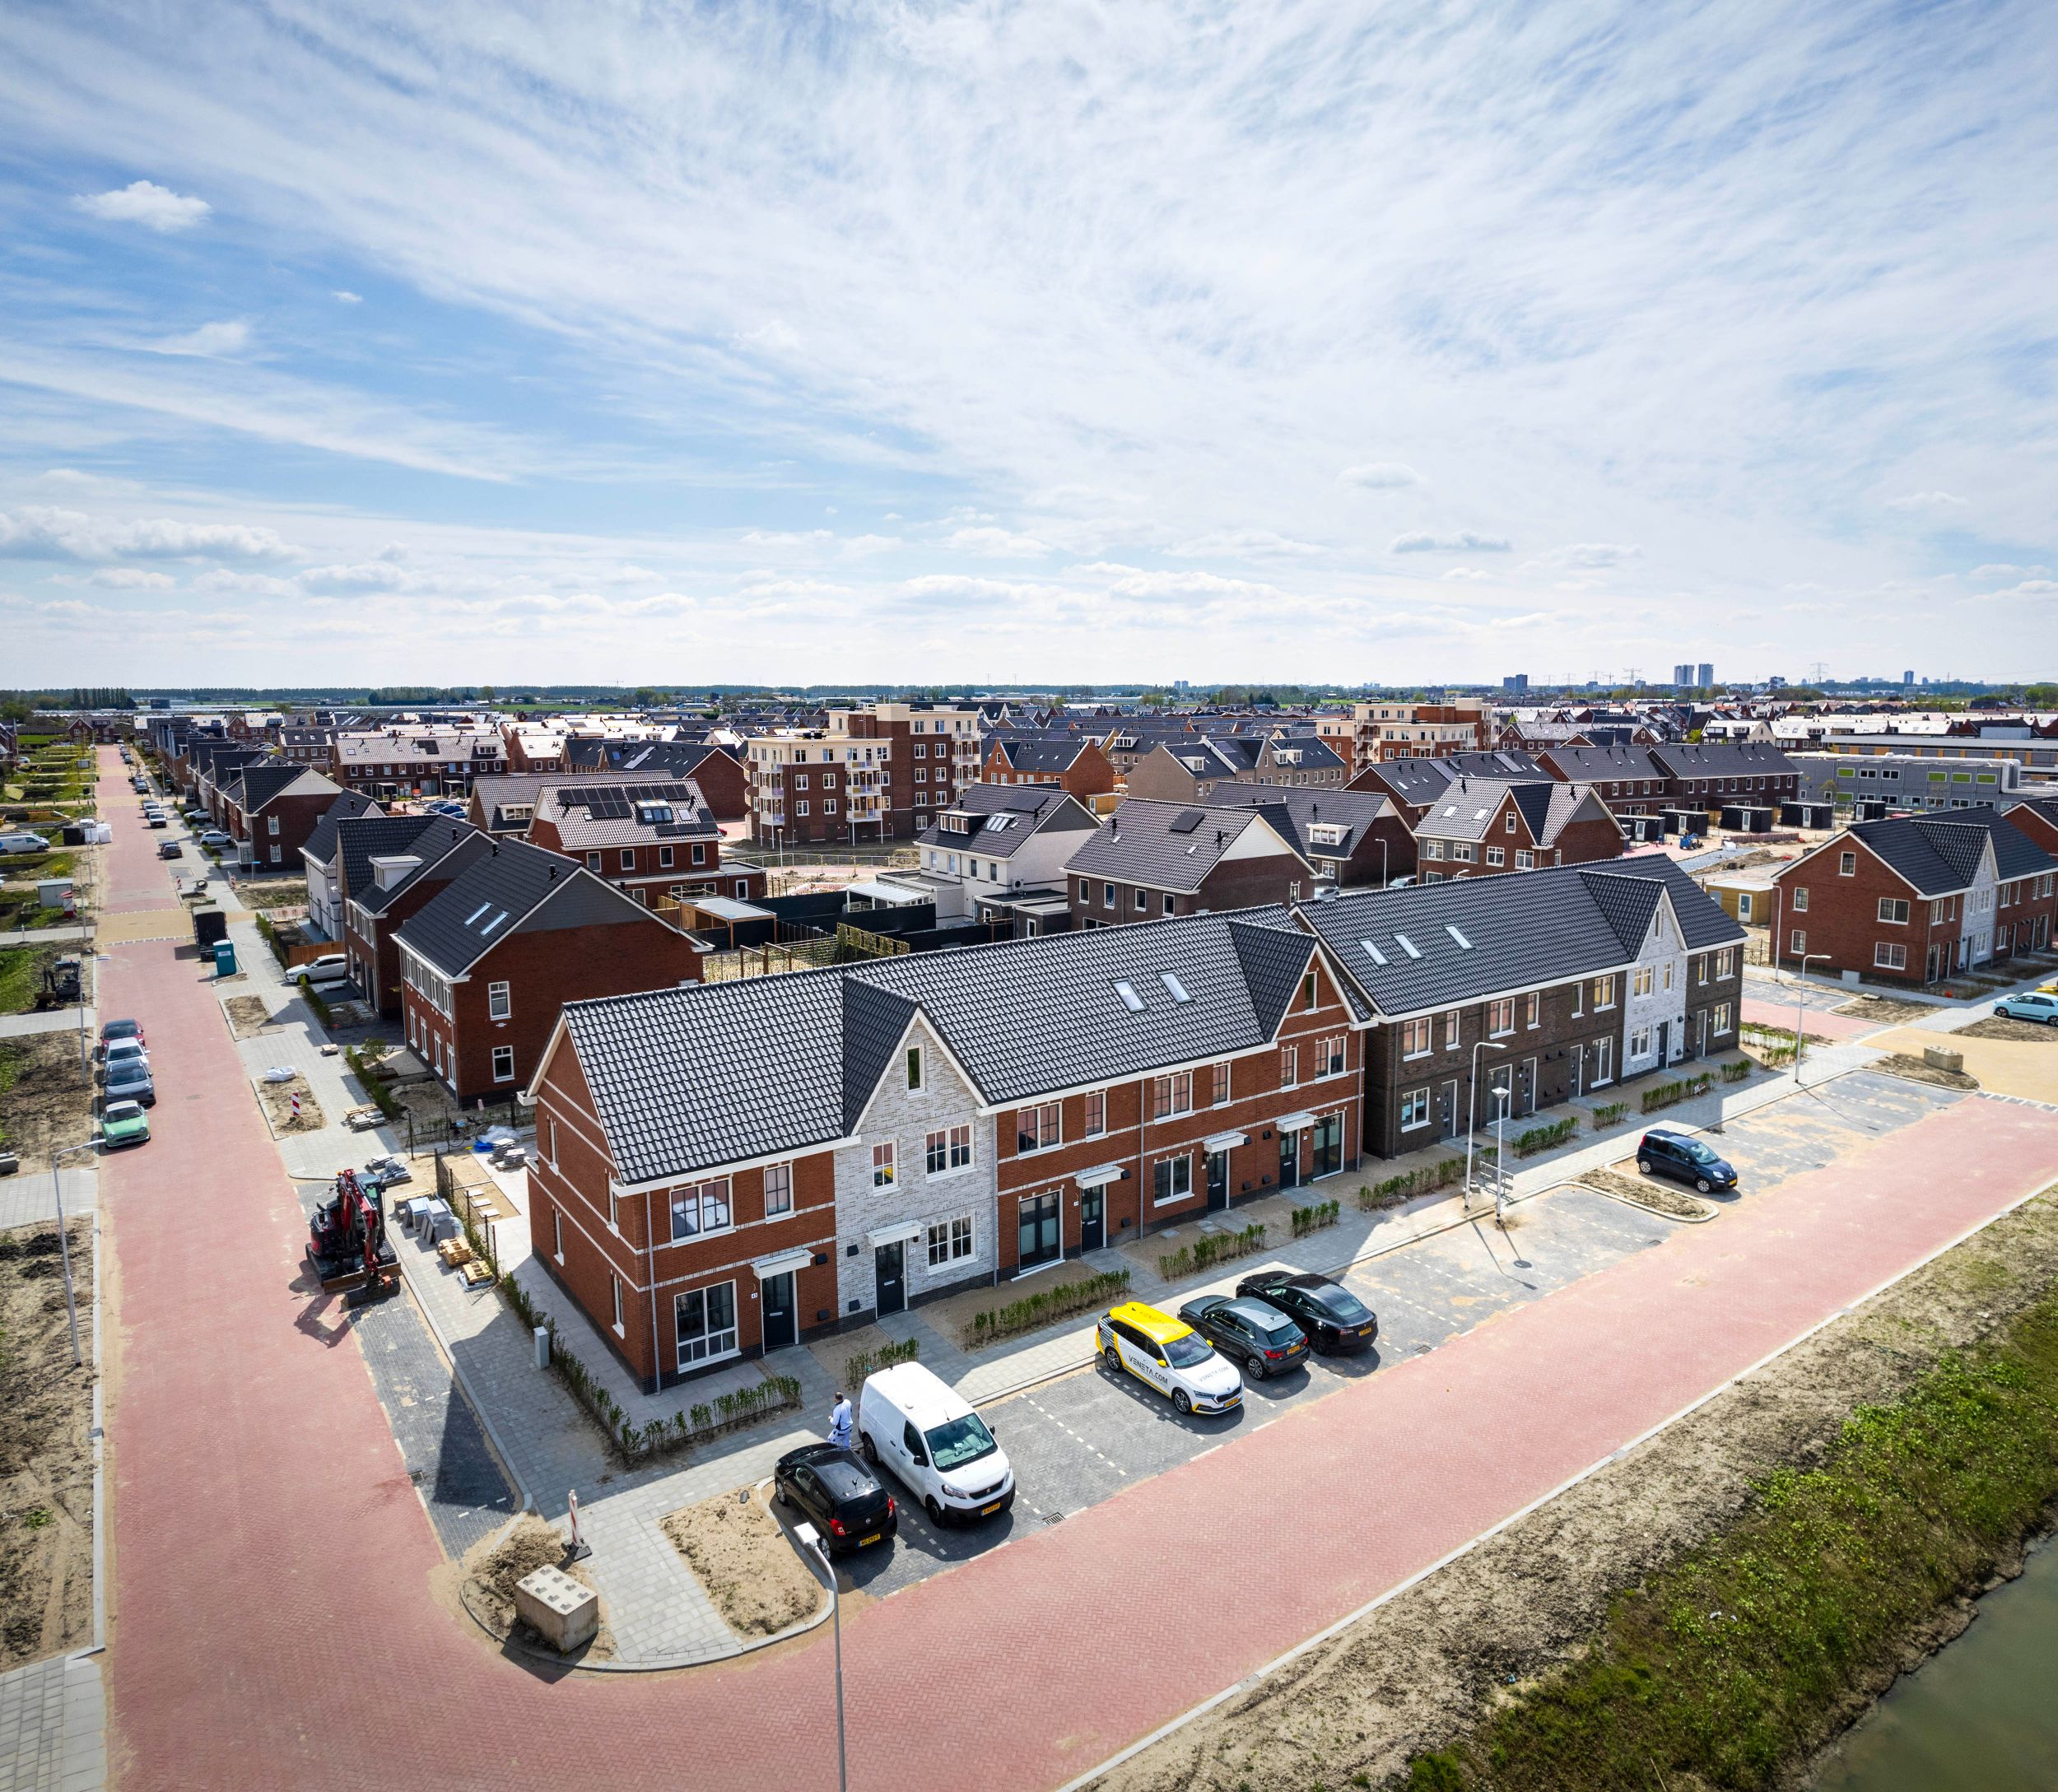 Dronefoto van de zijkant van een rij tweelaags met kap woningen in Zevenhuizen